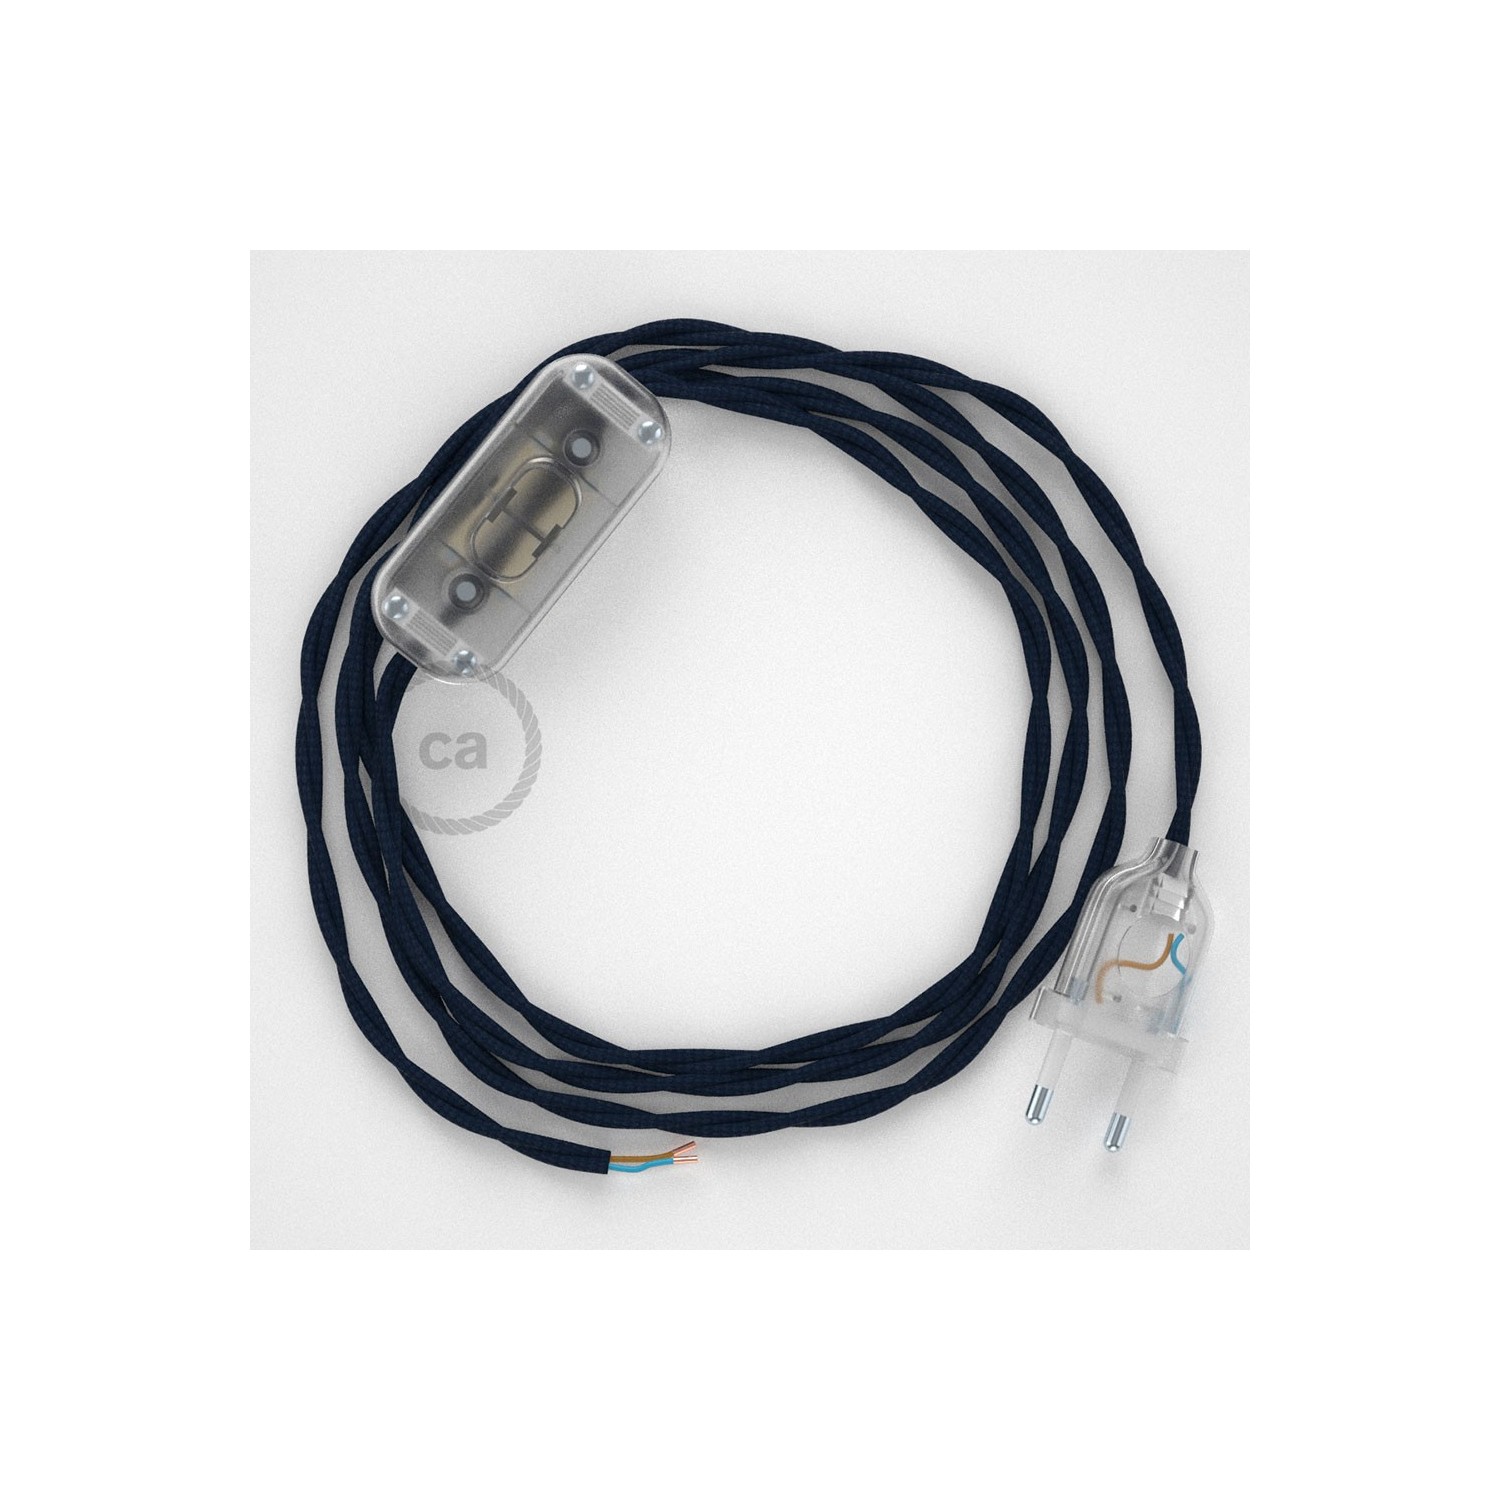 Cordon pour lampe, câble TM20 Effet Soie Bleu Foncé 1,80 m. Choisissez la couleur de la fiche et de l'interrupteur!